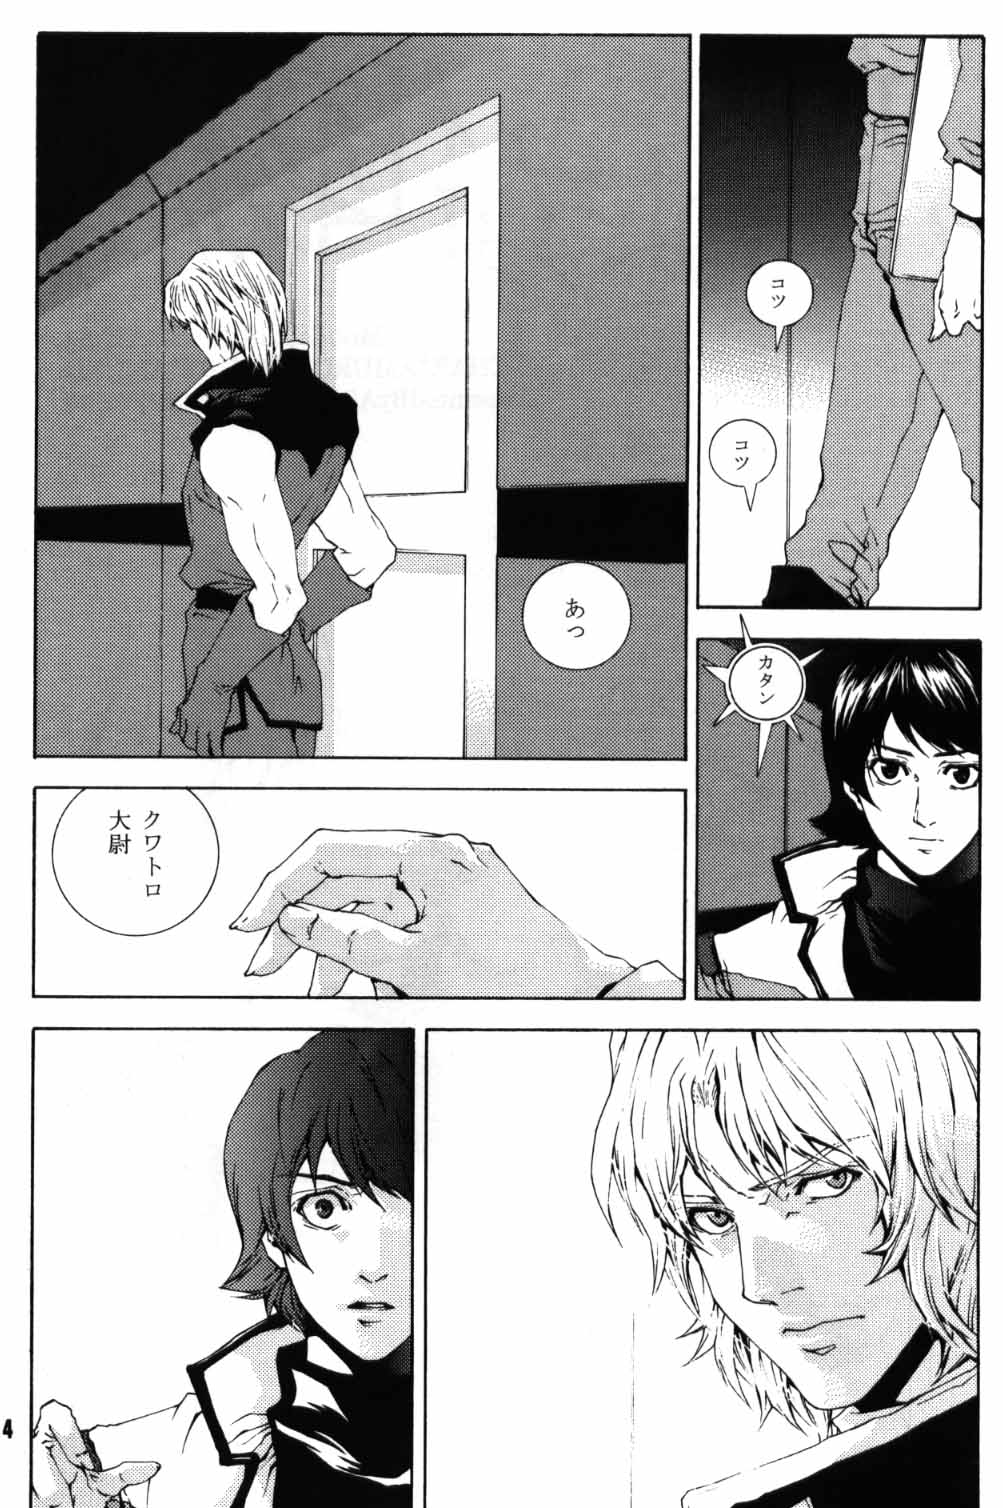 [APART (Yanagisawa Yukio)] Koi no you na Bakemono ga. (Zeta Gundam) page 2 full